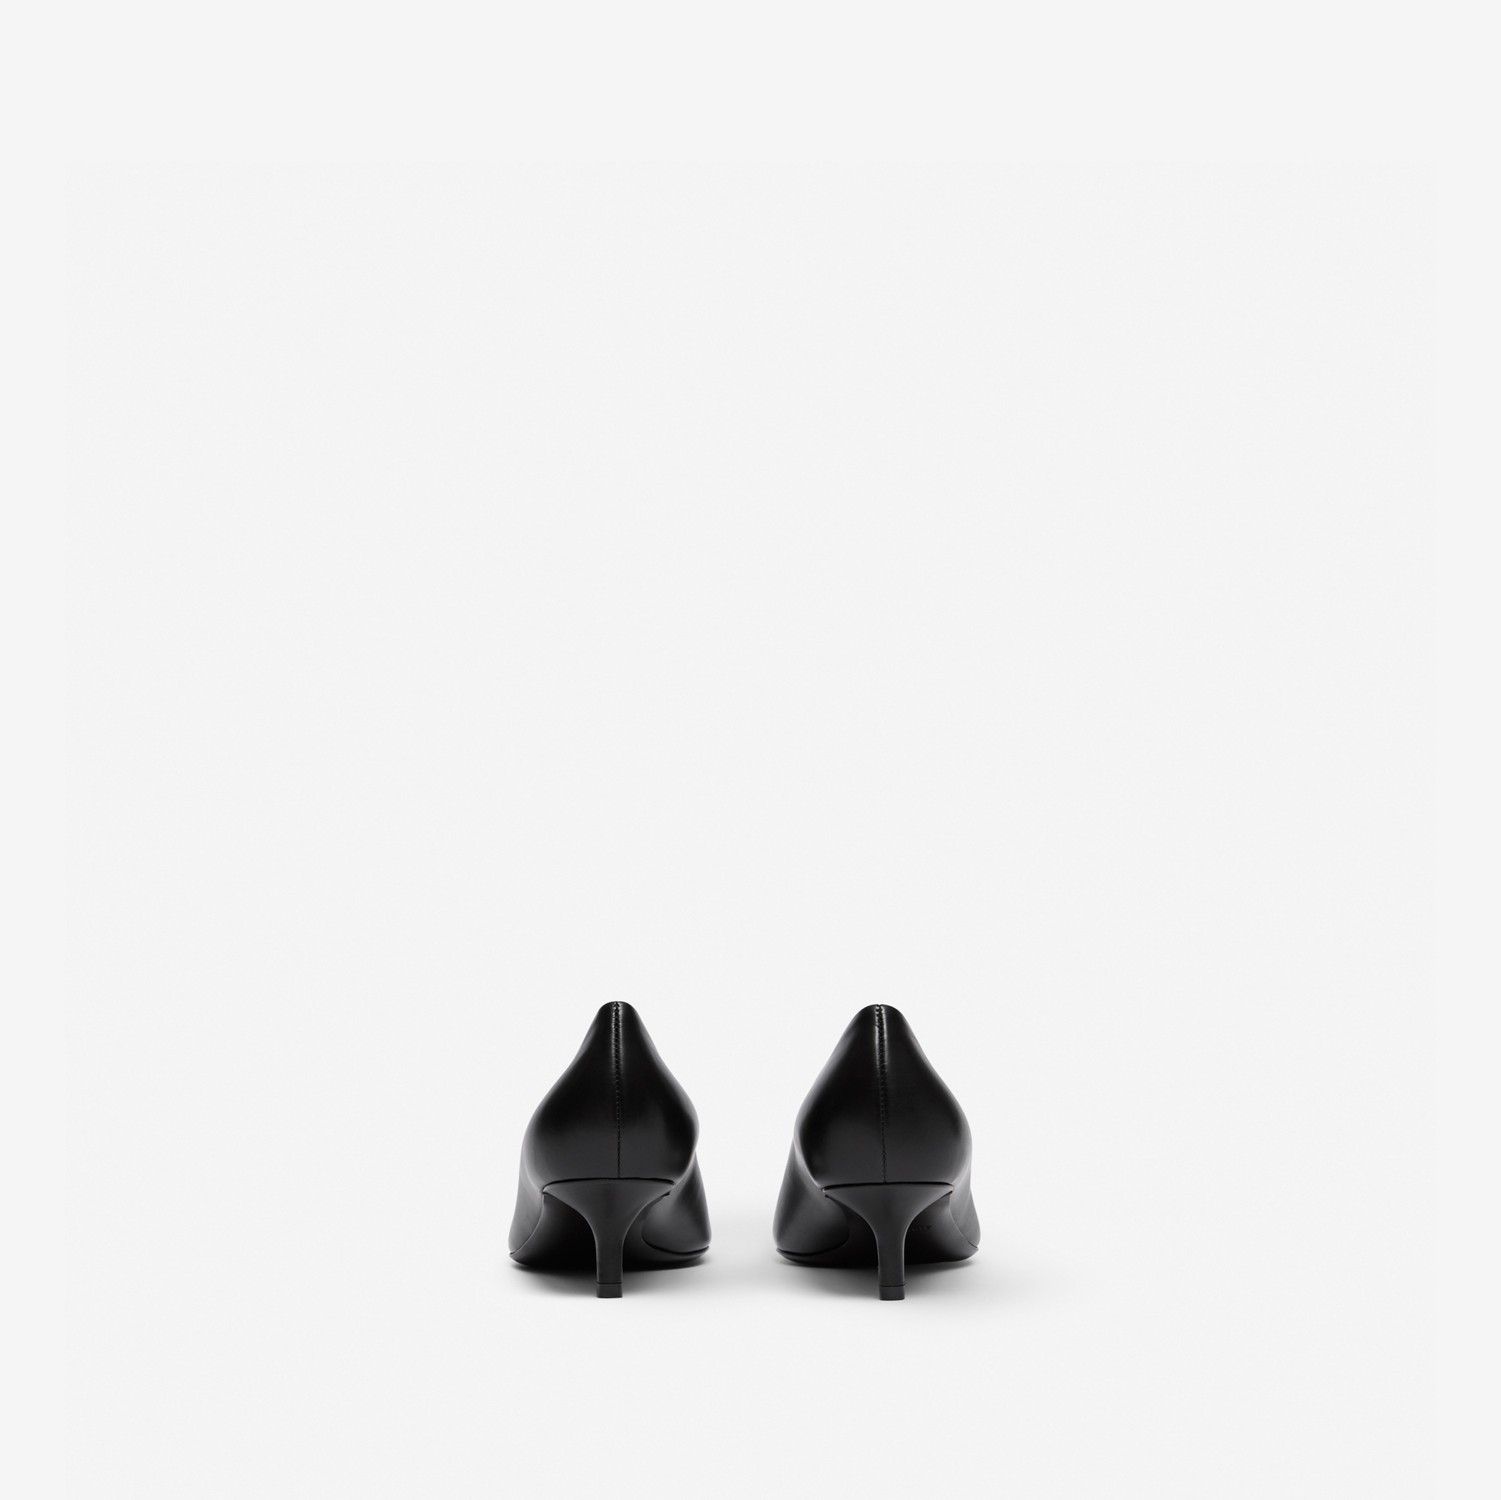 Scarpins de bico fino de couro com monograma (Preto) - Mulheres | Burberry® oficial